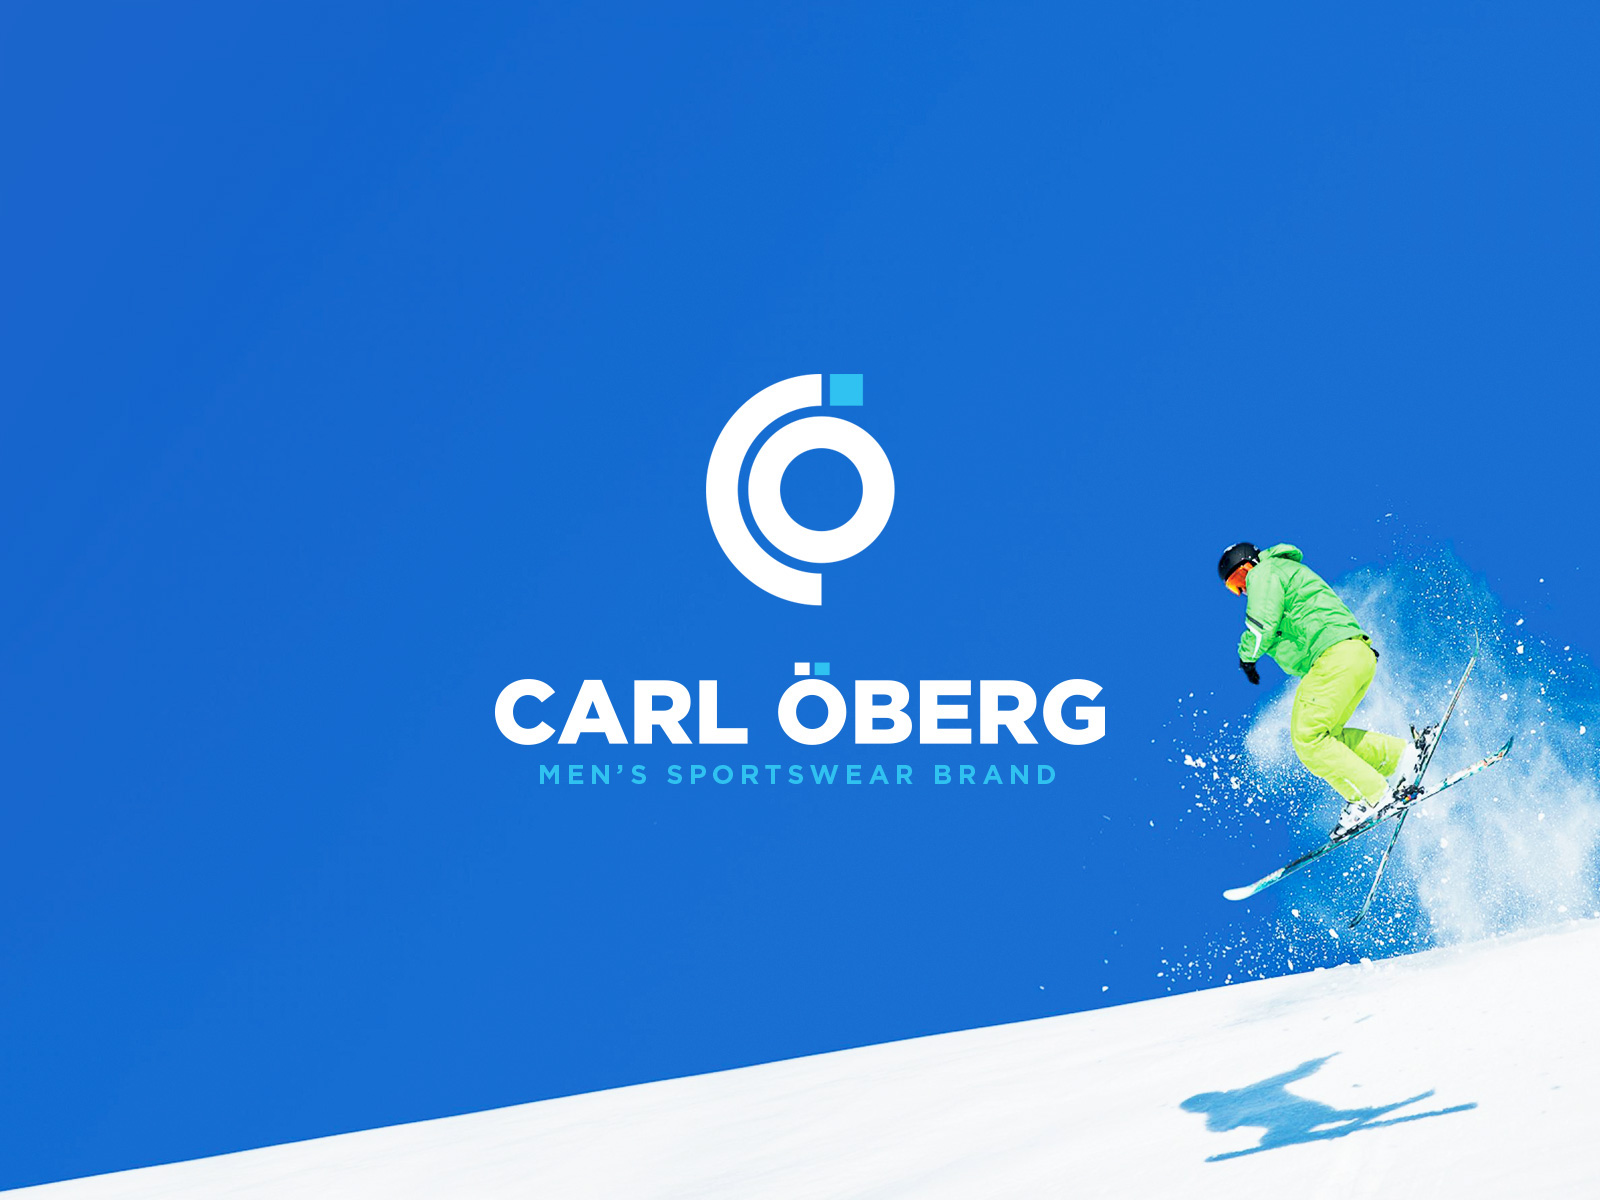 运动品牌Carl Öberg视觉形象设计